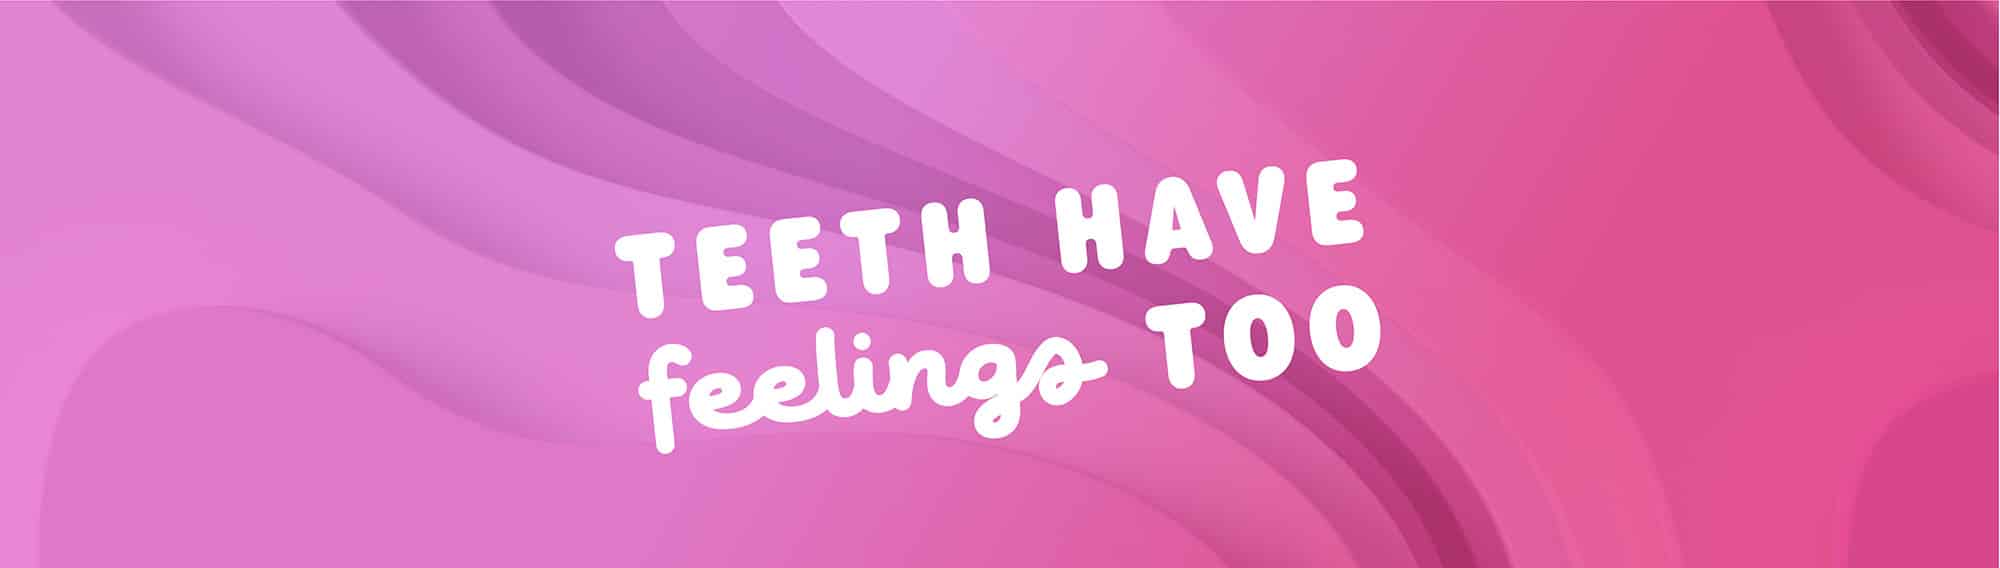 Teeth Have Feelings Too